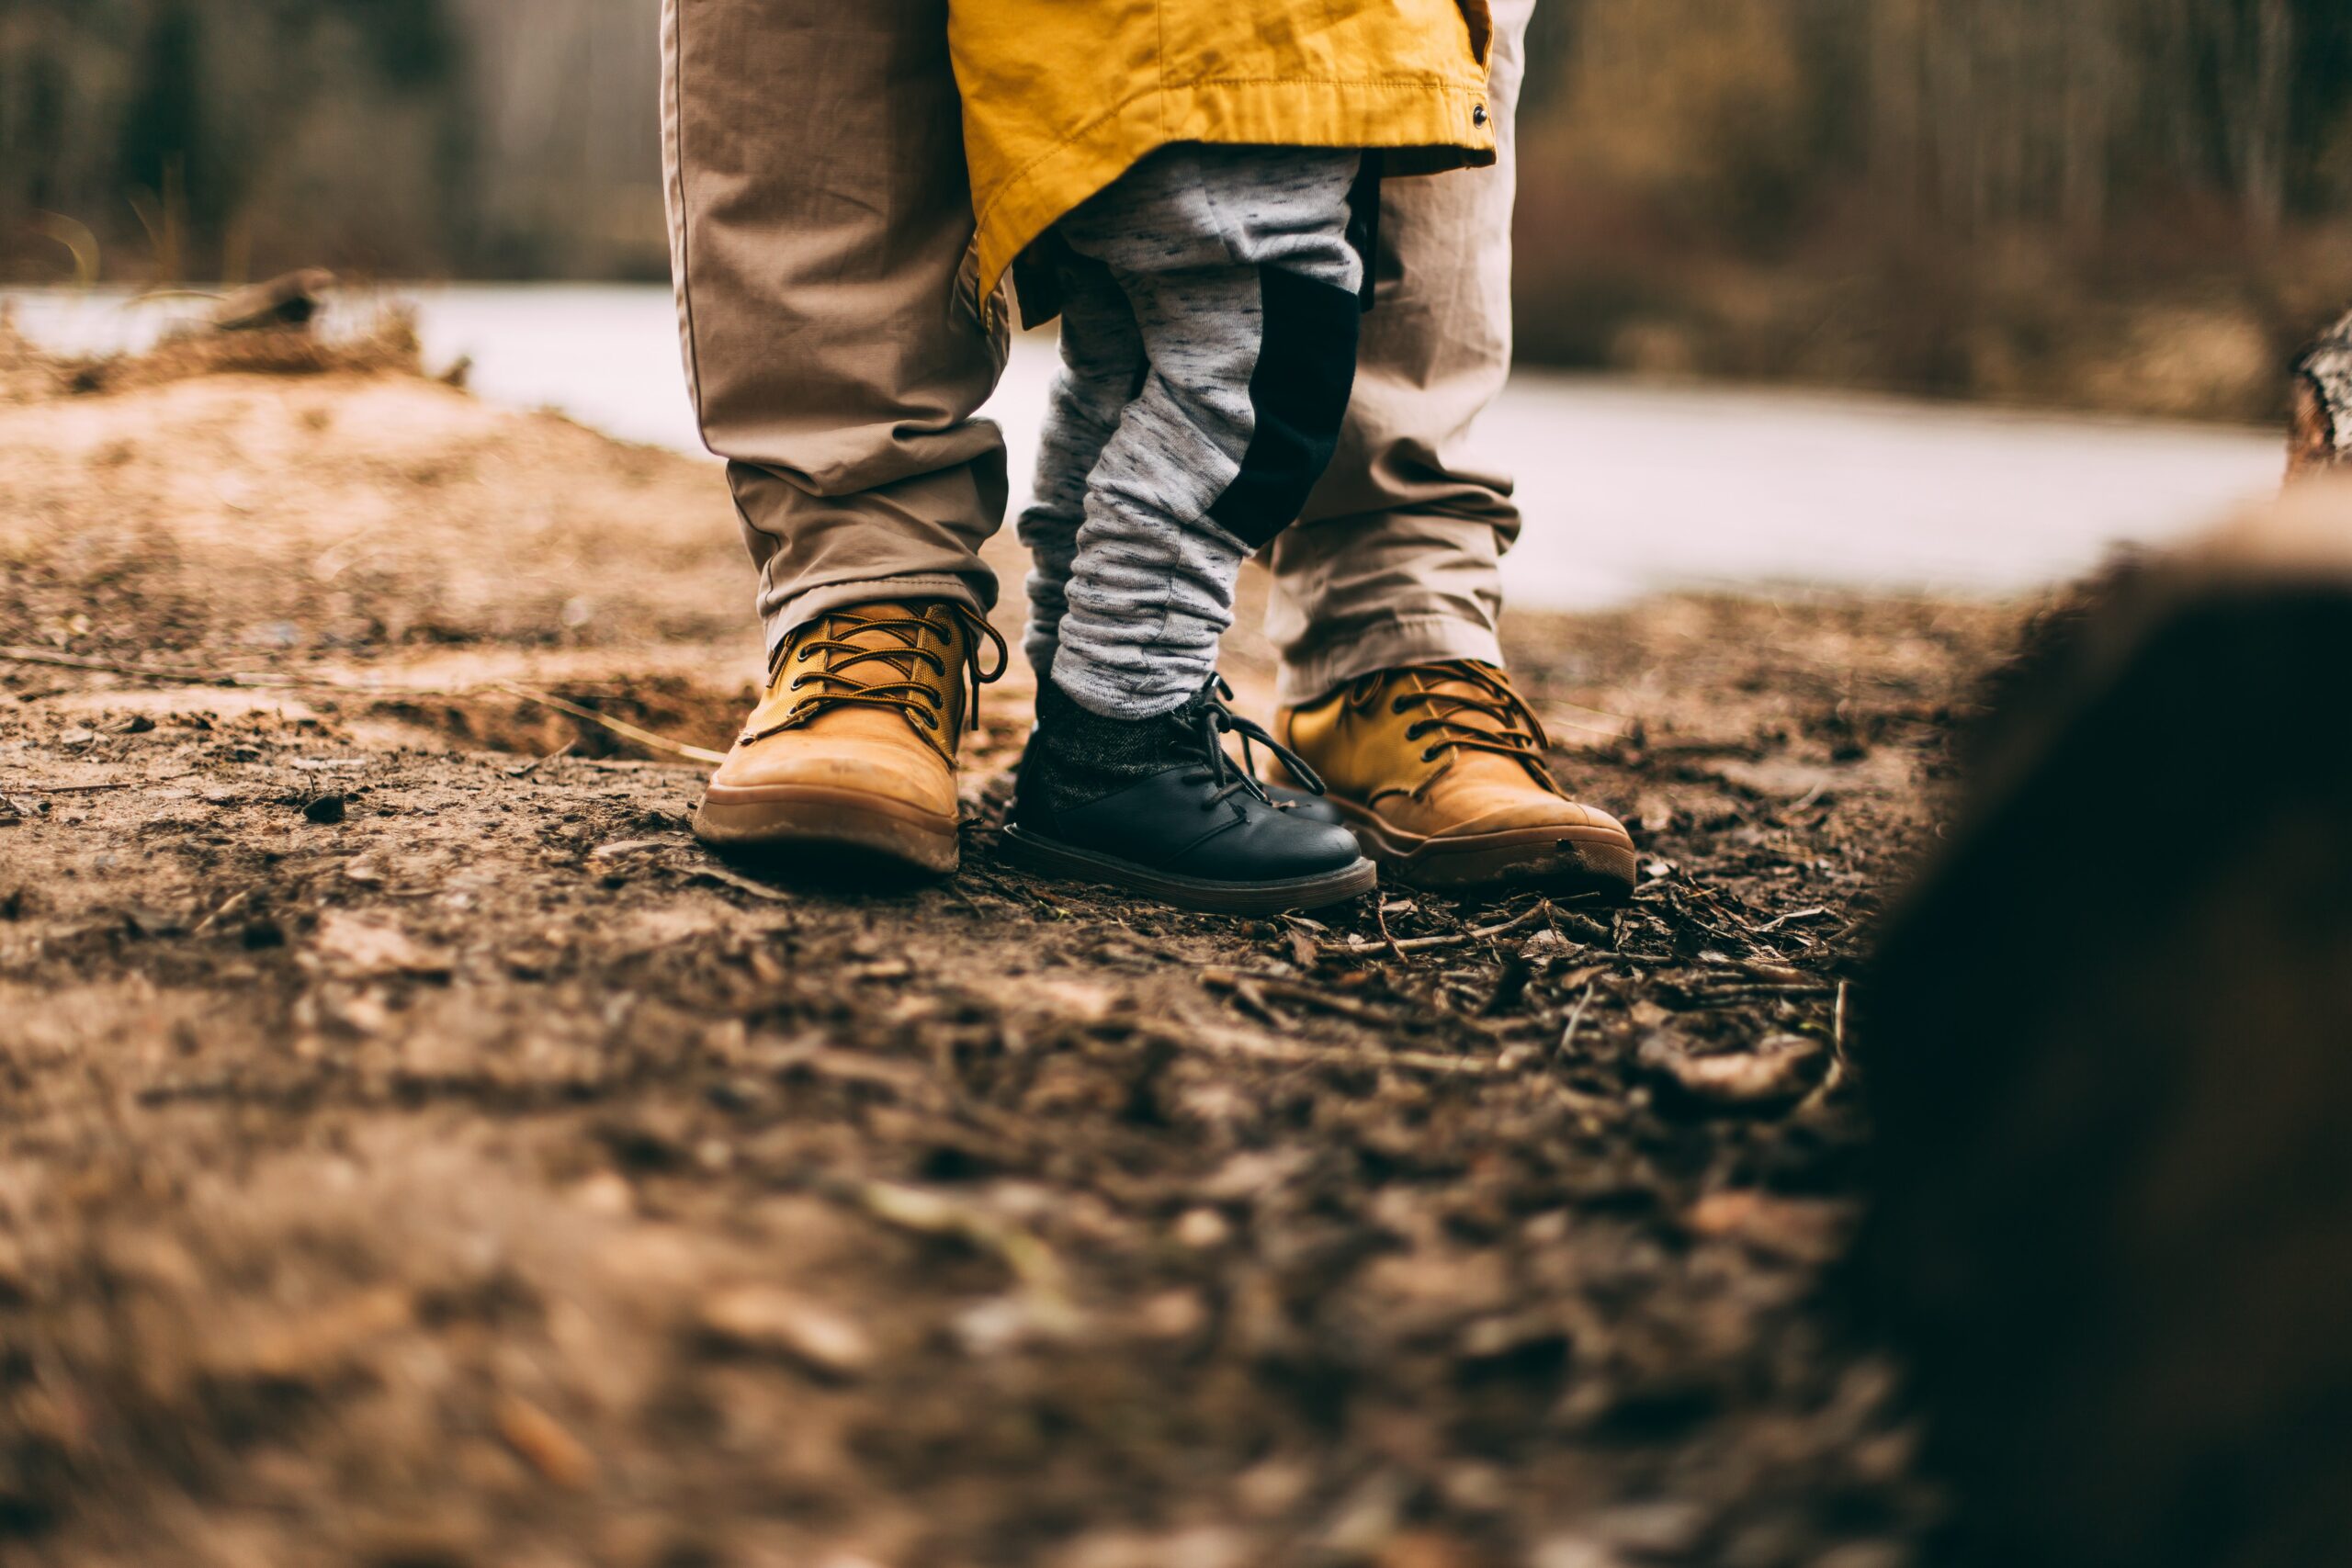 detalhe dos pés de pessoa adulta com criança ao lado, ambos trajados e calçados para caminhada ou trilha